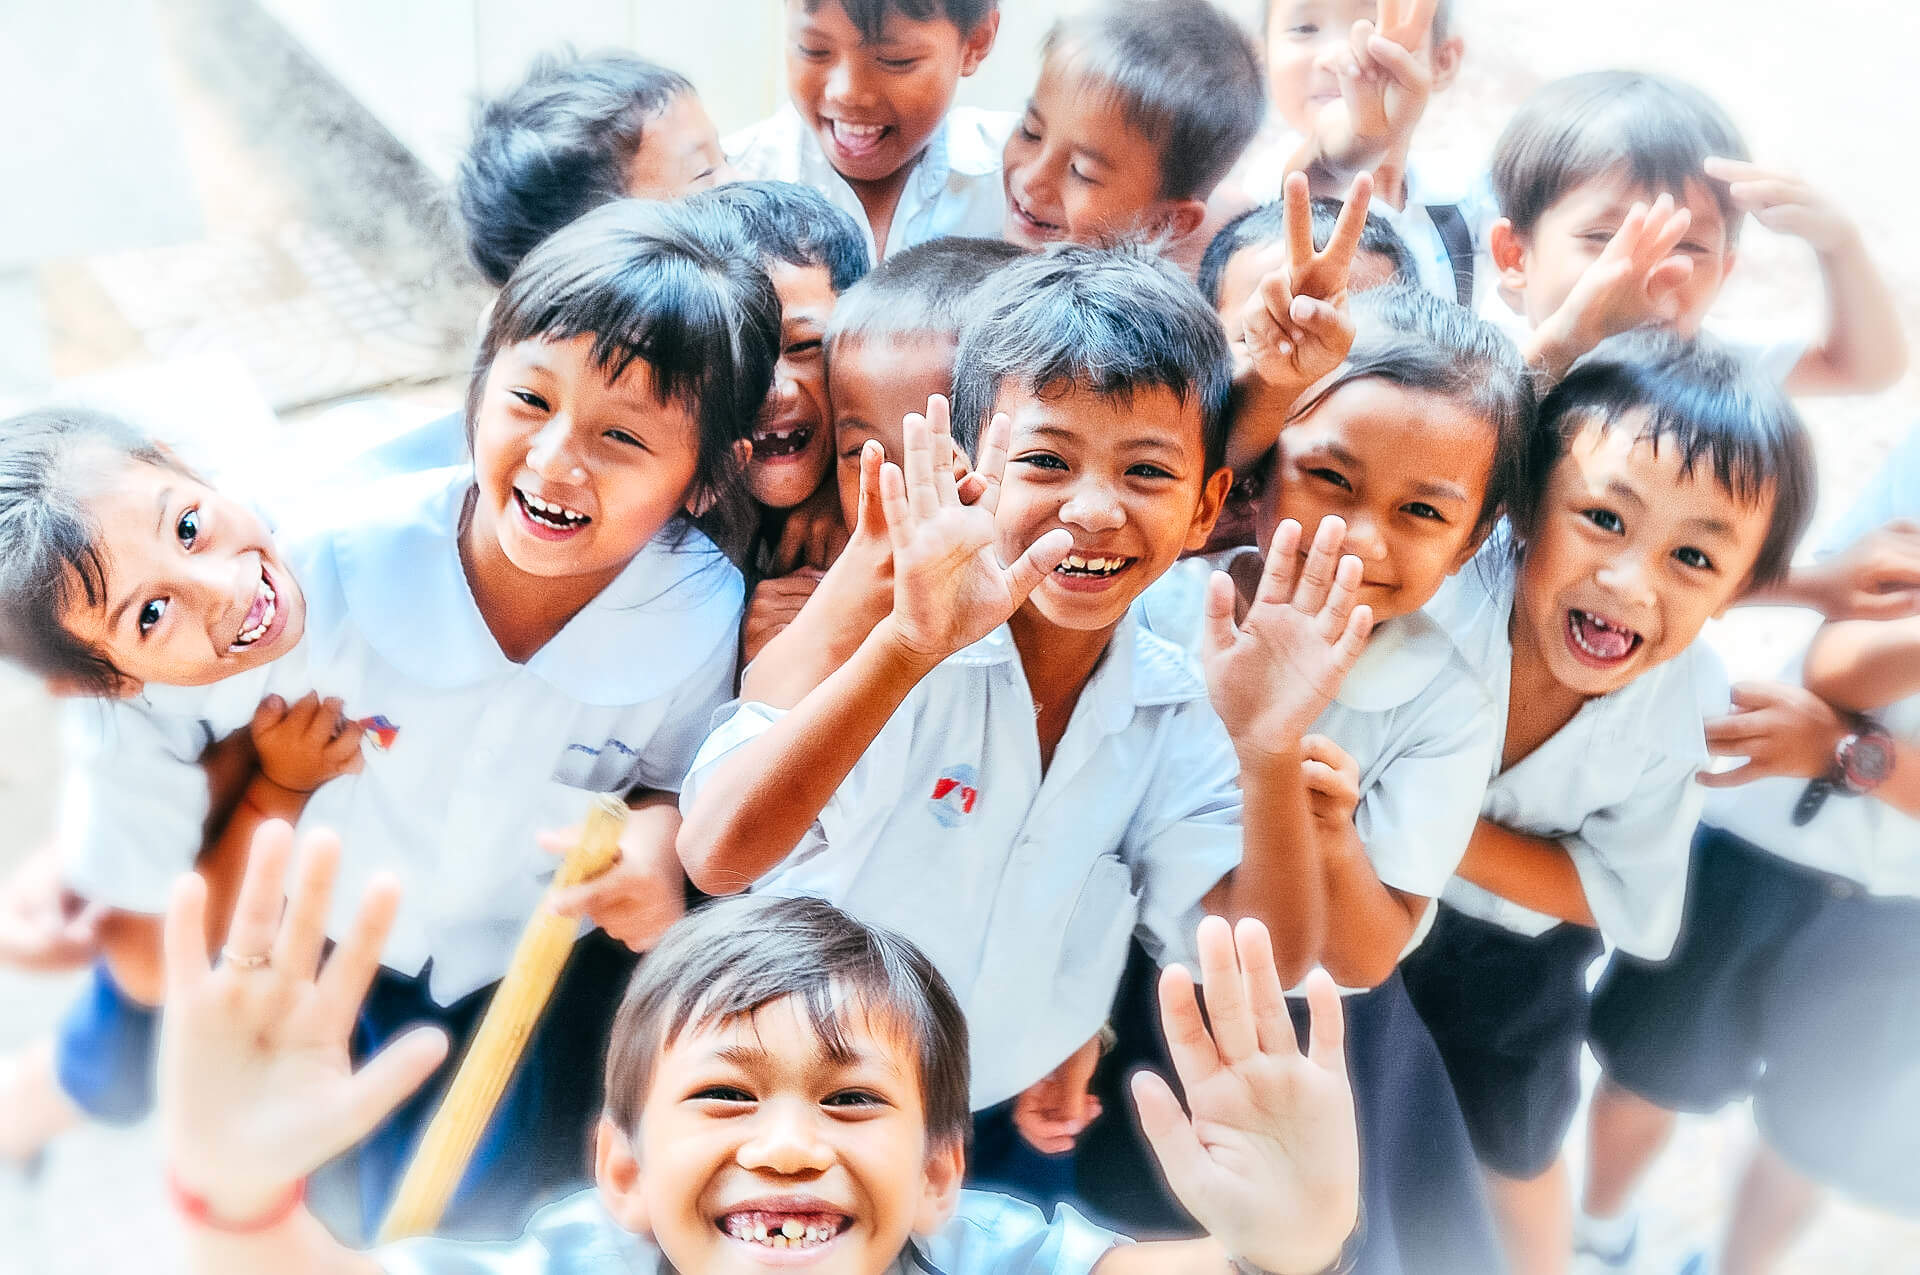 Kids around the world 2 Kinderhilfsprojekte “Kids around the World”